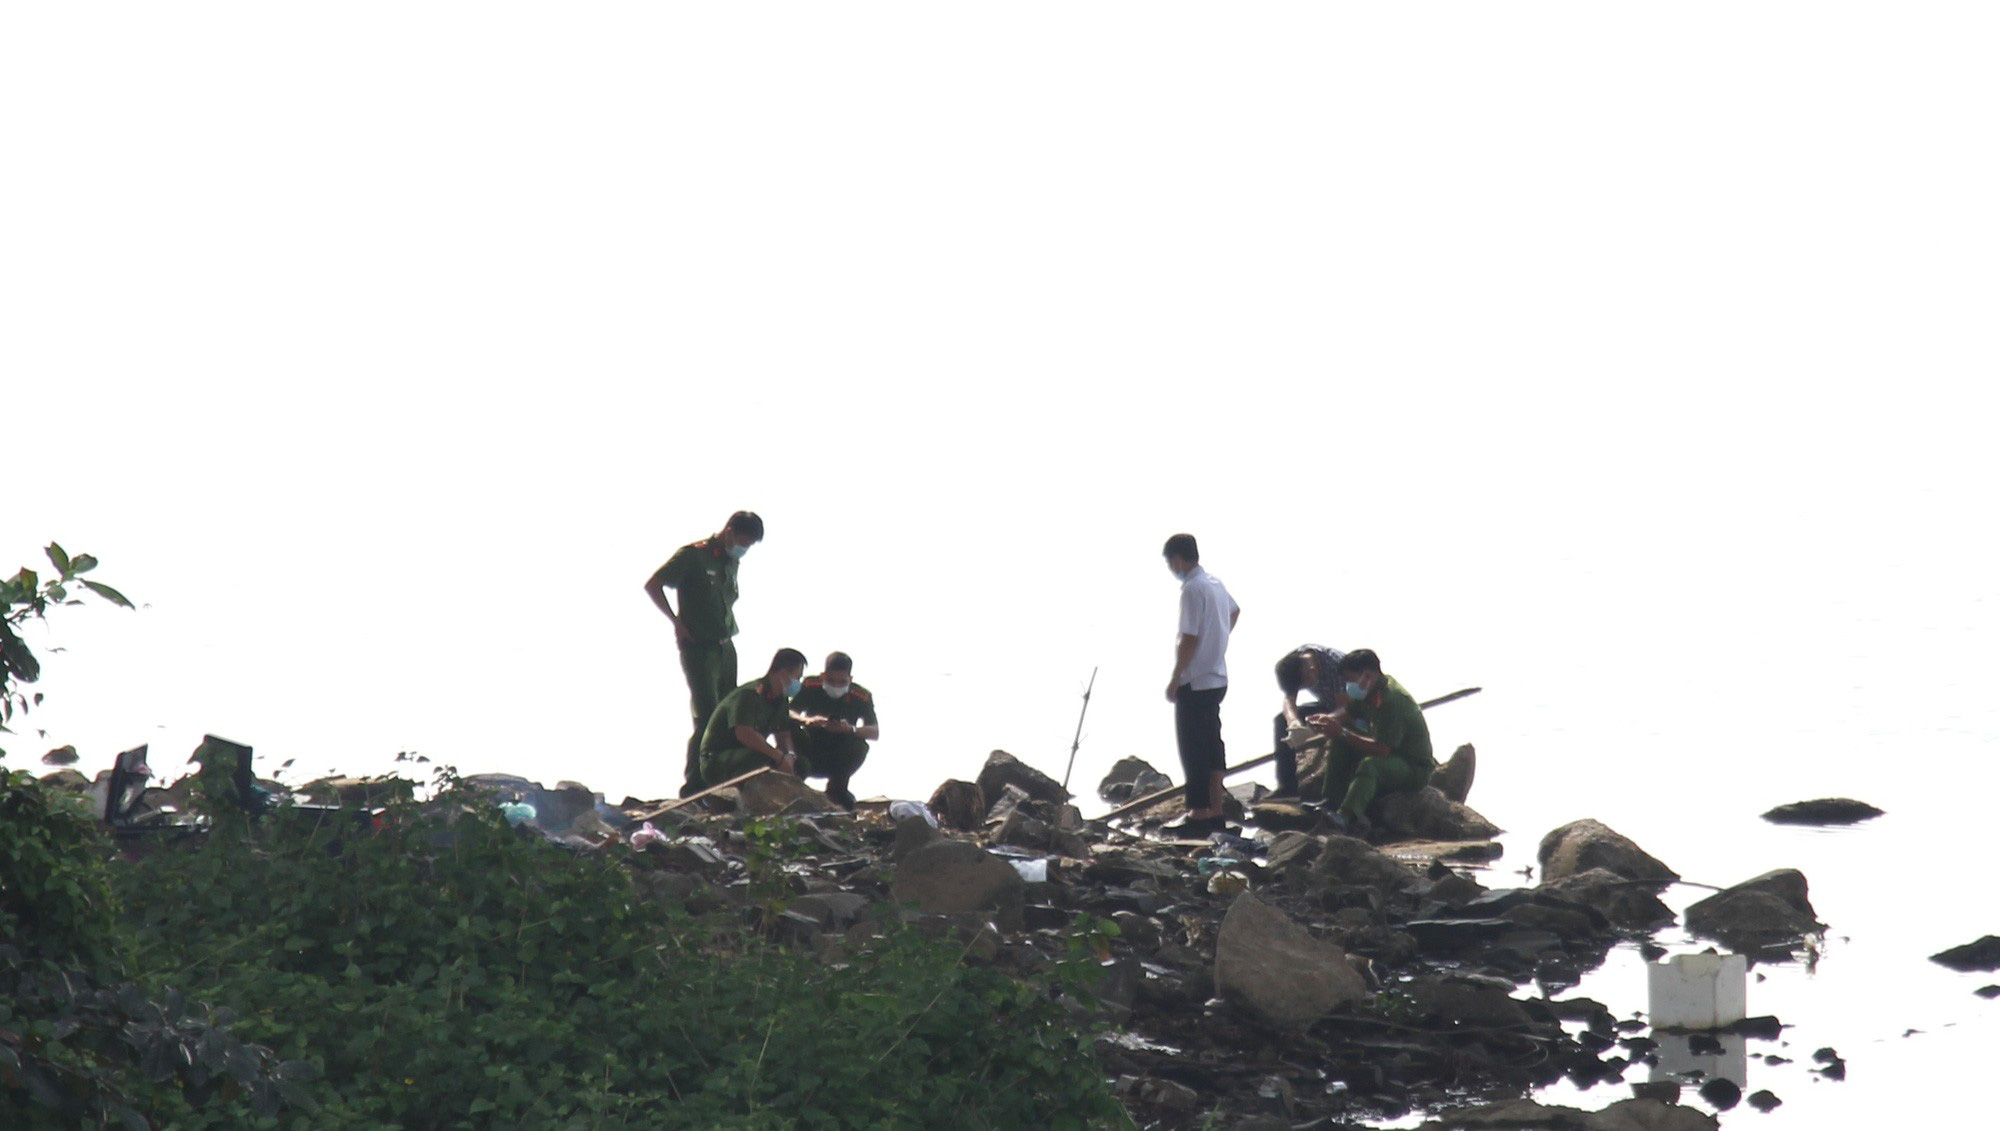 Đà Nẵng: Phát hiện vali chứa thi thể bị chặt khúc trôi dạt trên sông Hàn - Ảnh 3.